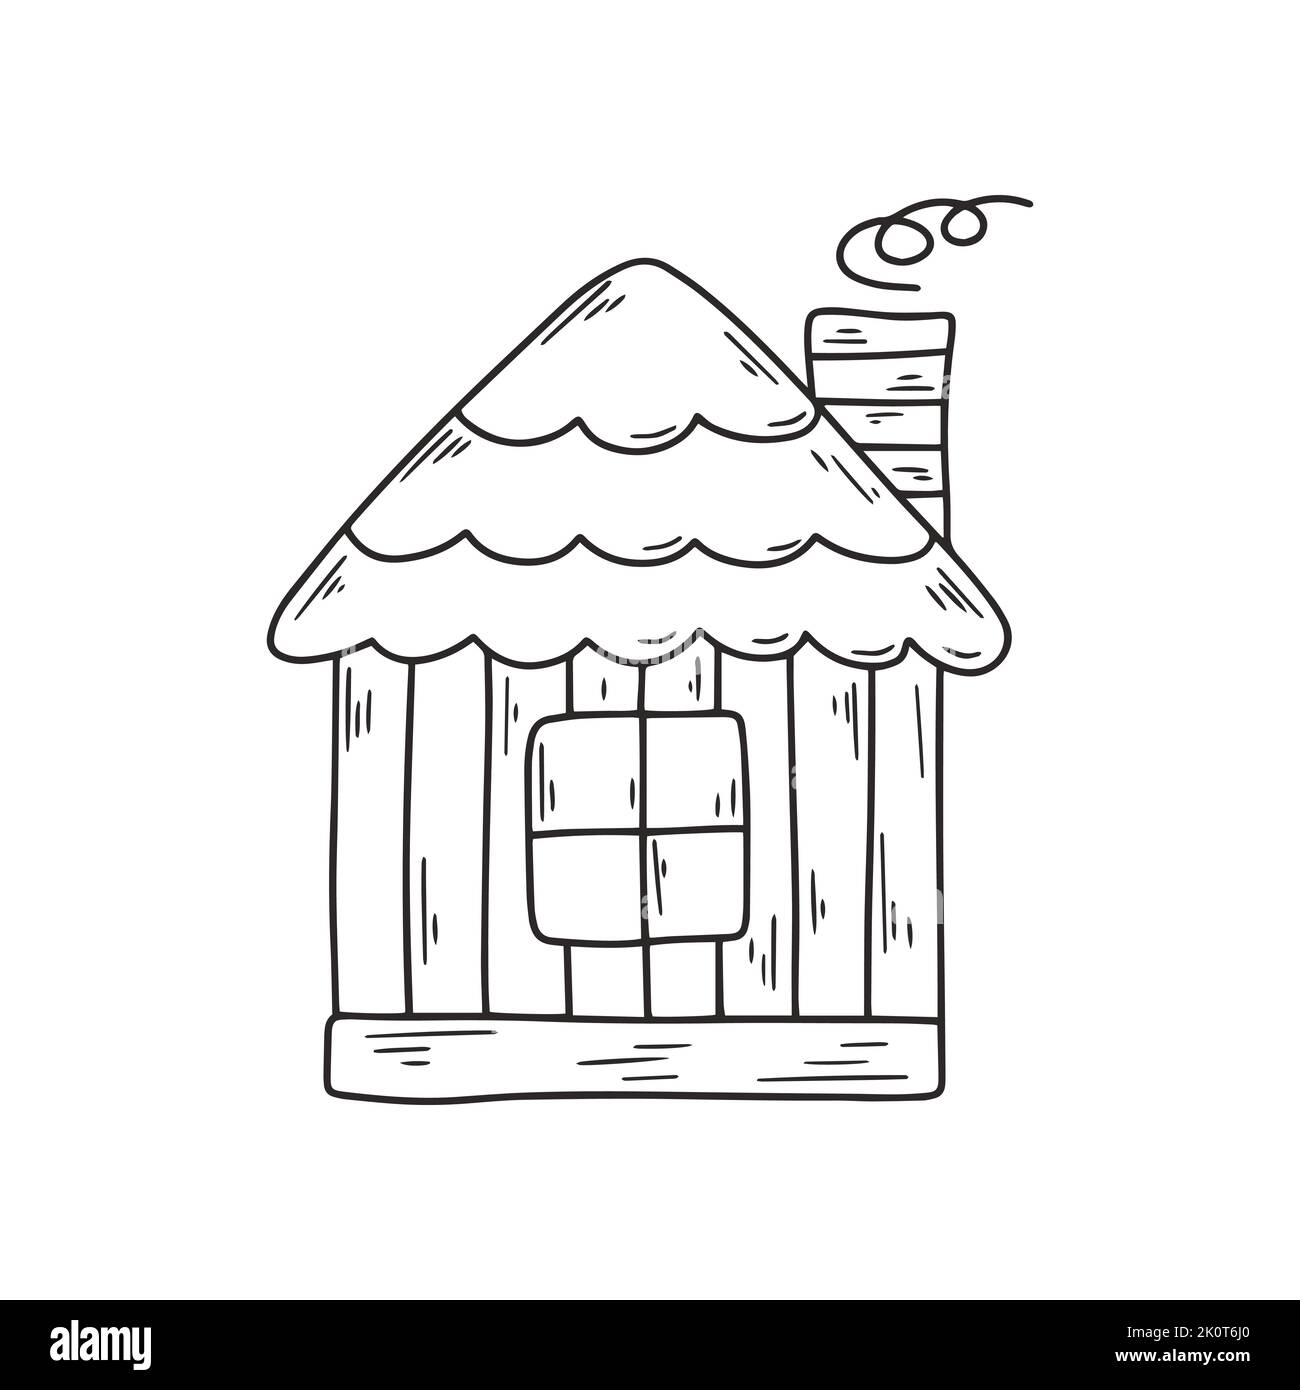 Holzmärchenhaus mit Schornstein schwarze Linienzeichnung. Einfache schwarze Skizze Bild von Hütte Vektor isoliert Illustration. Gehäuse Malbuch Stock Vektor